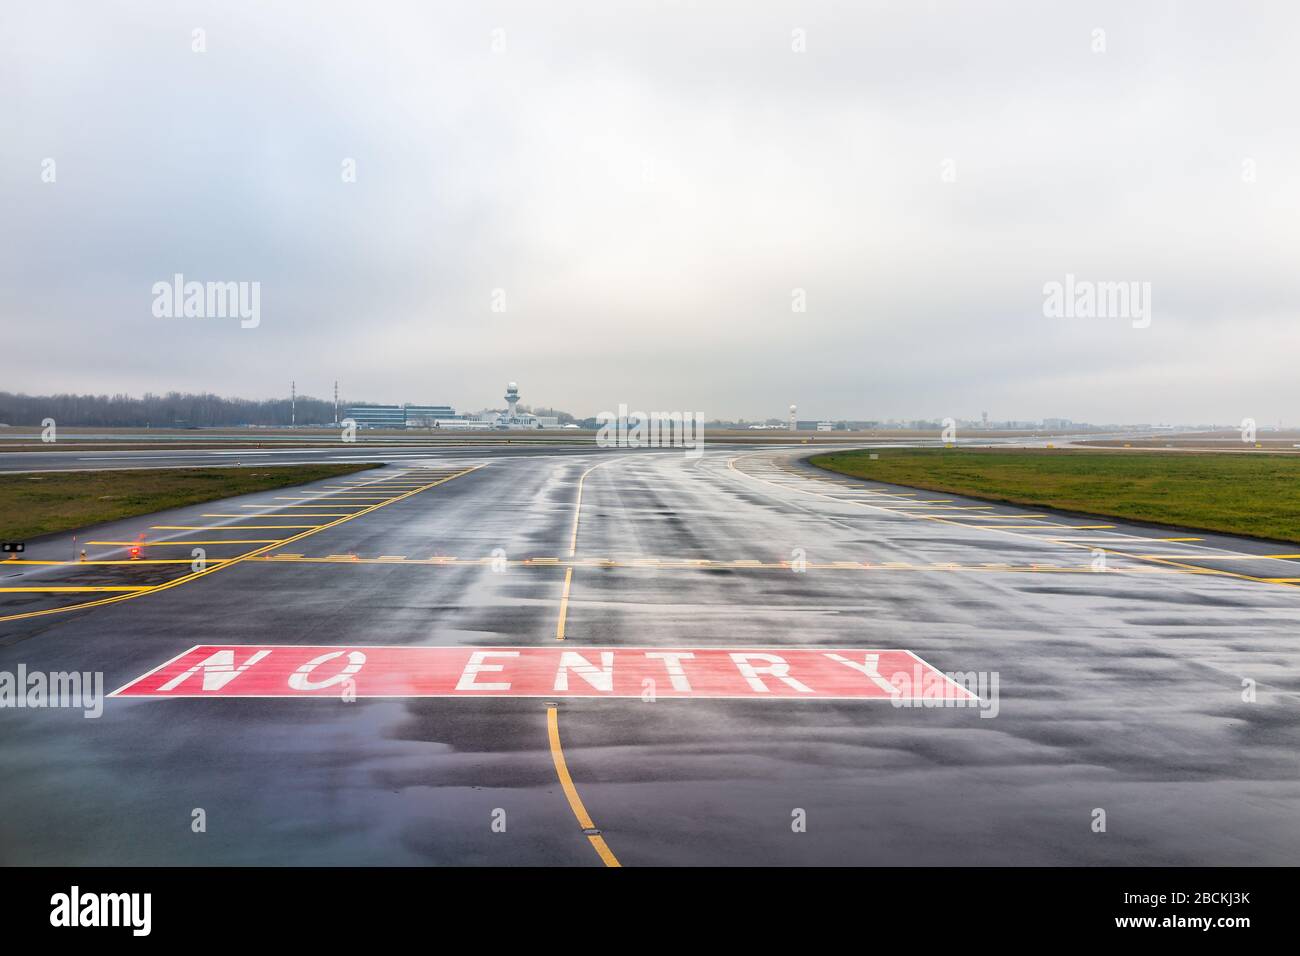 Varsavia, Polonia - 23 gennaio 2020: Pista aeroportuale internazionale Chopin senza cartello d'ingresso per gli aeroplani in una giornata invernale torbida Foto Stock